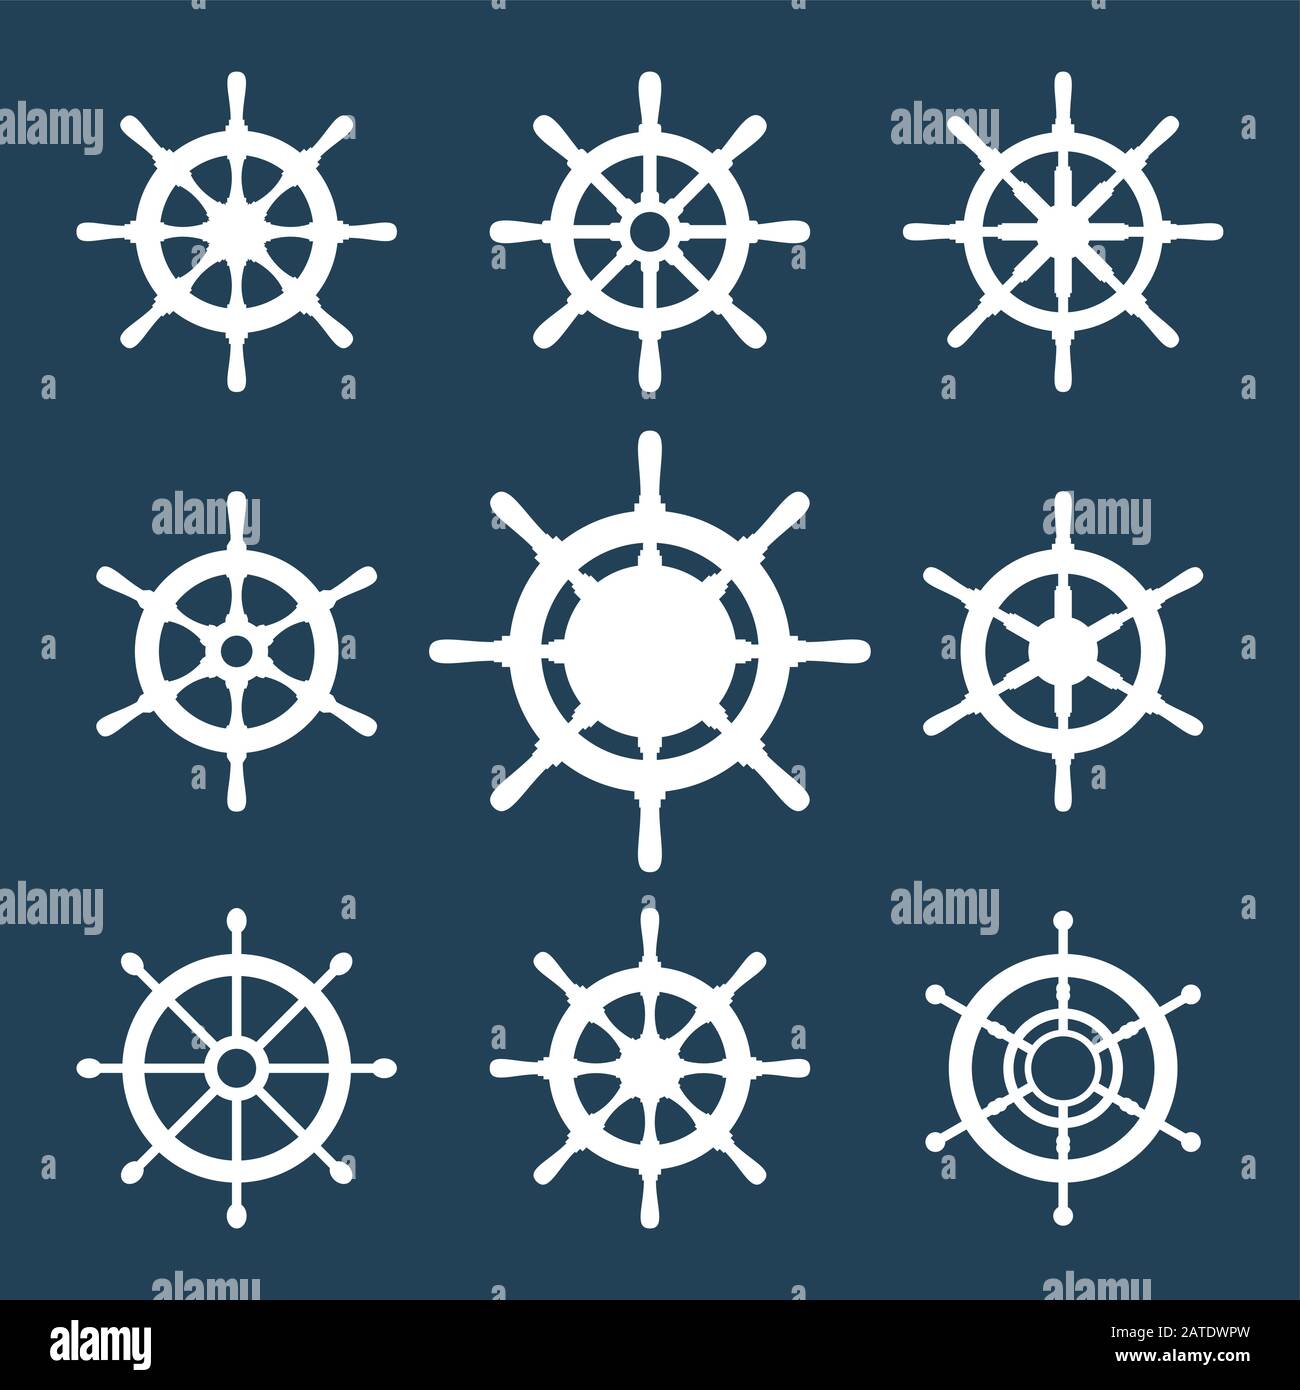 Set di icone vettoriali per il timone della nave. Icone del volante del timone isolate in bianco. Simboli delle icone sul volante. Raccolta di 9 sagome vettoriali per il timone della nave. Lui Illustrazione Vettoriale